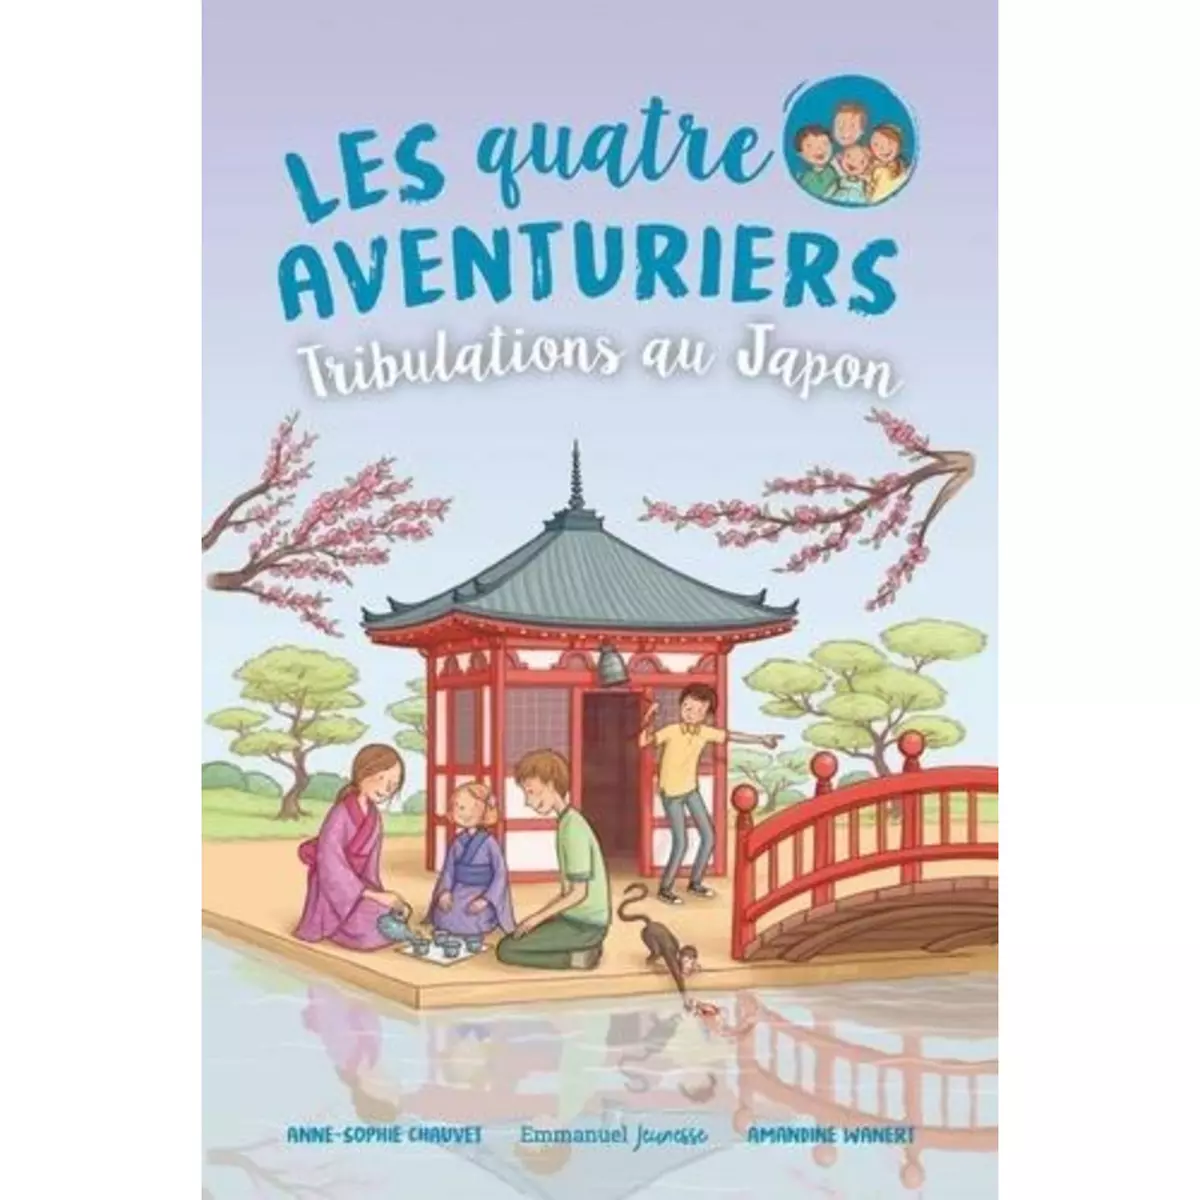  LES QUATRE AVENTURIERS TOME 9 : TRIBULATIONS AU JAPON, Chauvet Anne-Sophie